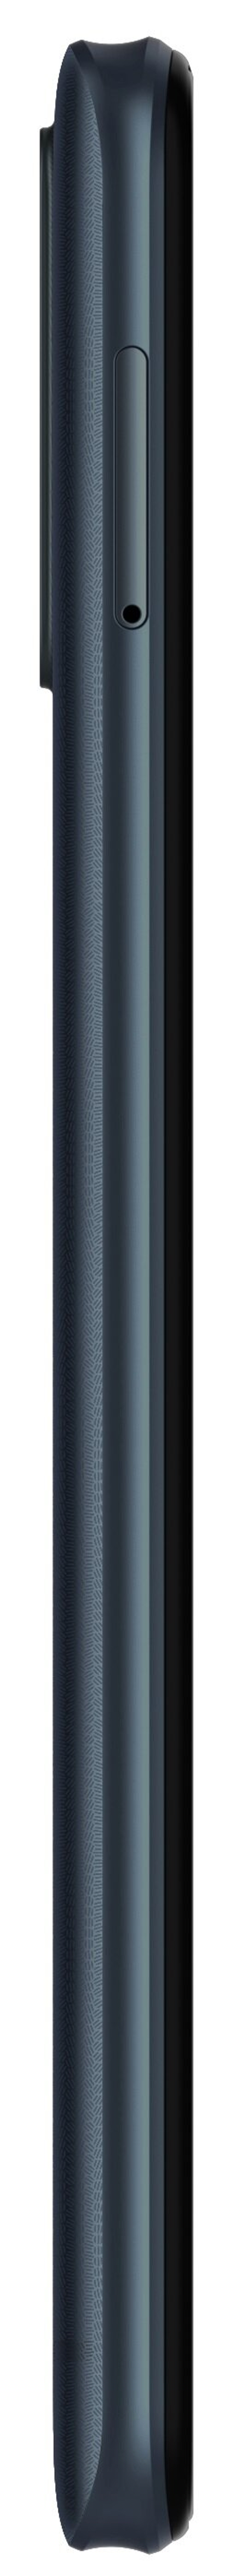 Dual Blau SIM A53 Blade 64 ZTE GB Pro